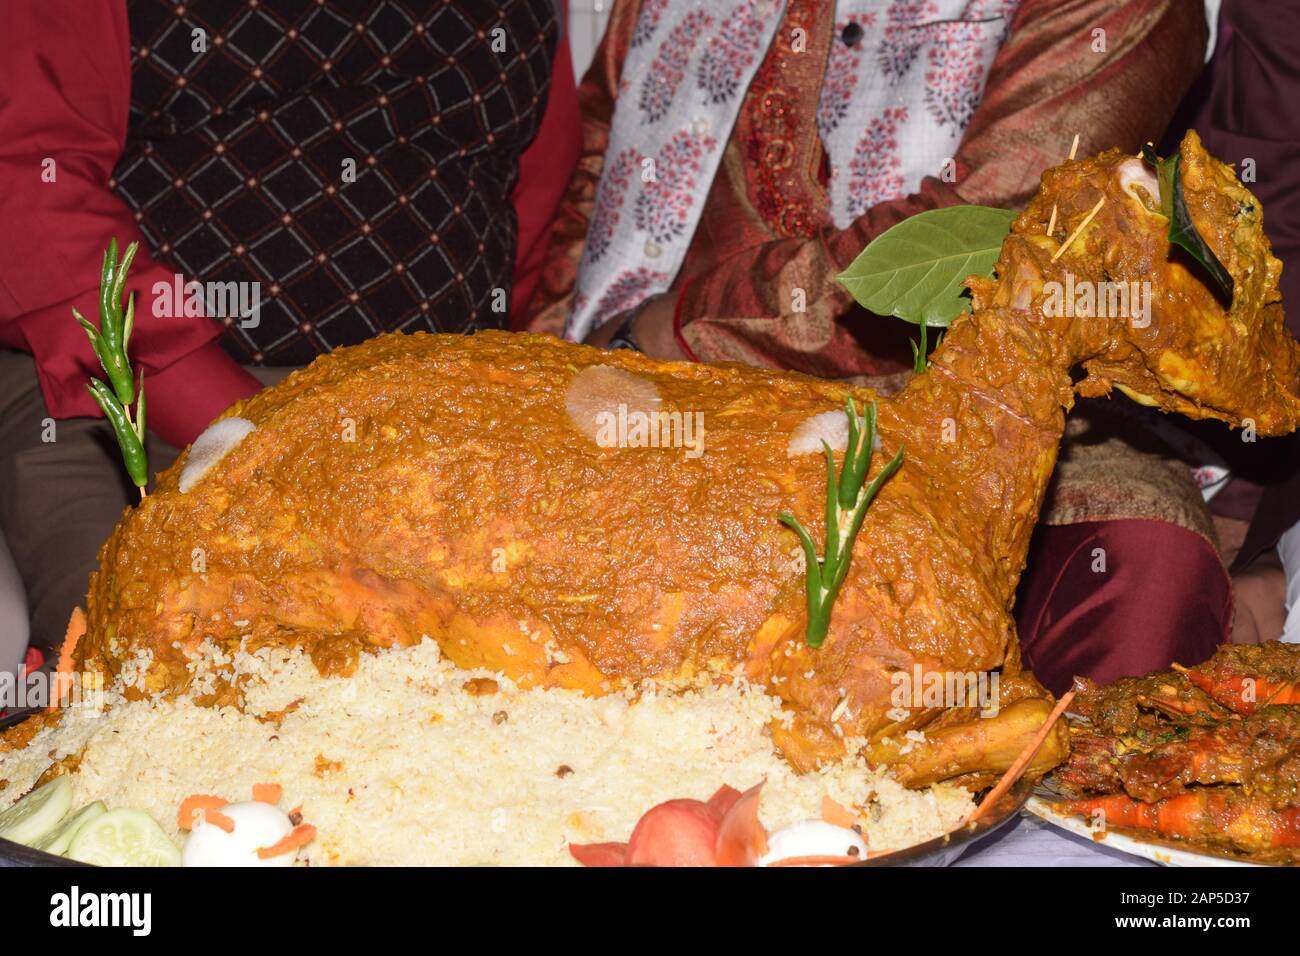 full goat roast on wedding ceremony Stock Photo